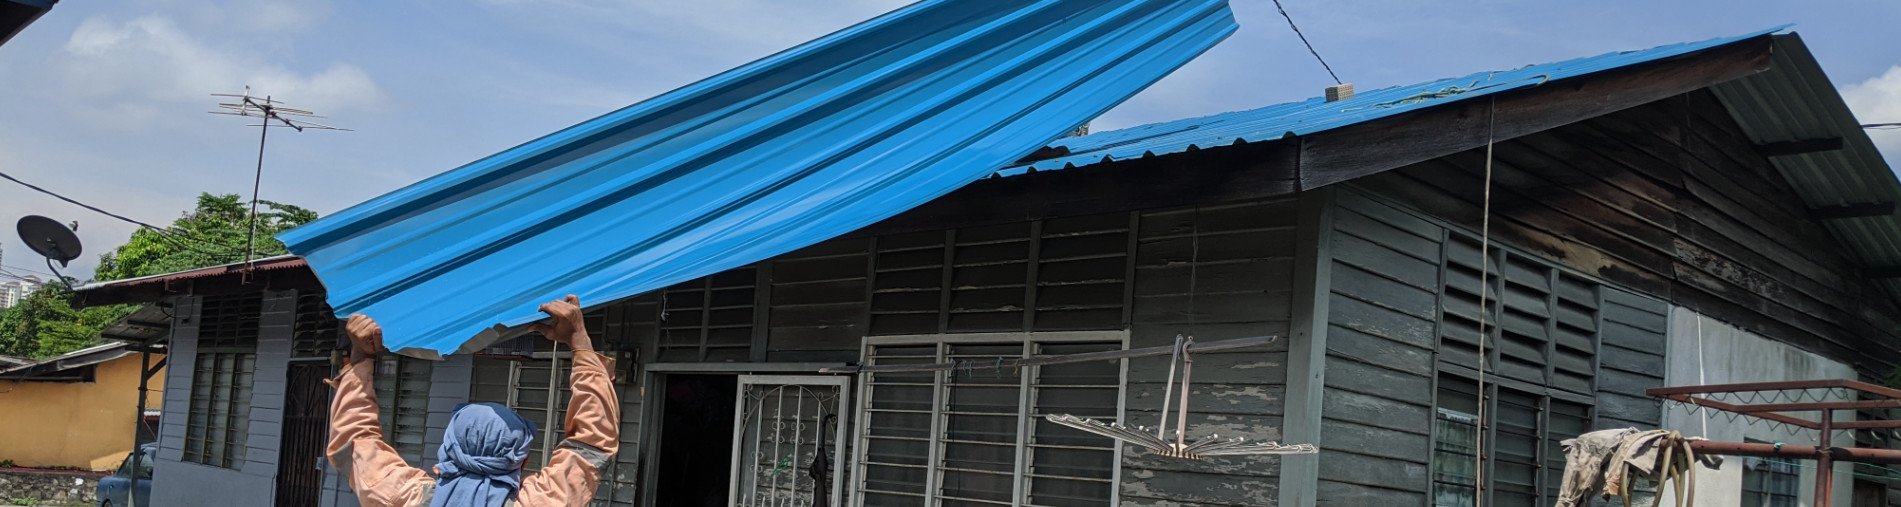 Roof repair for Segambut family